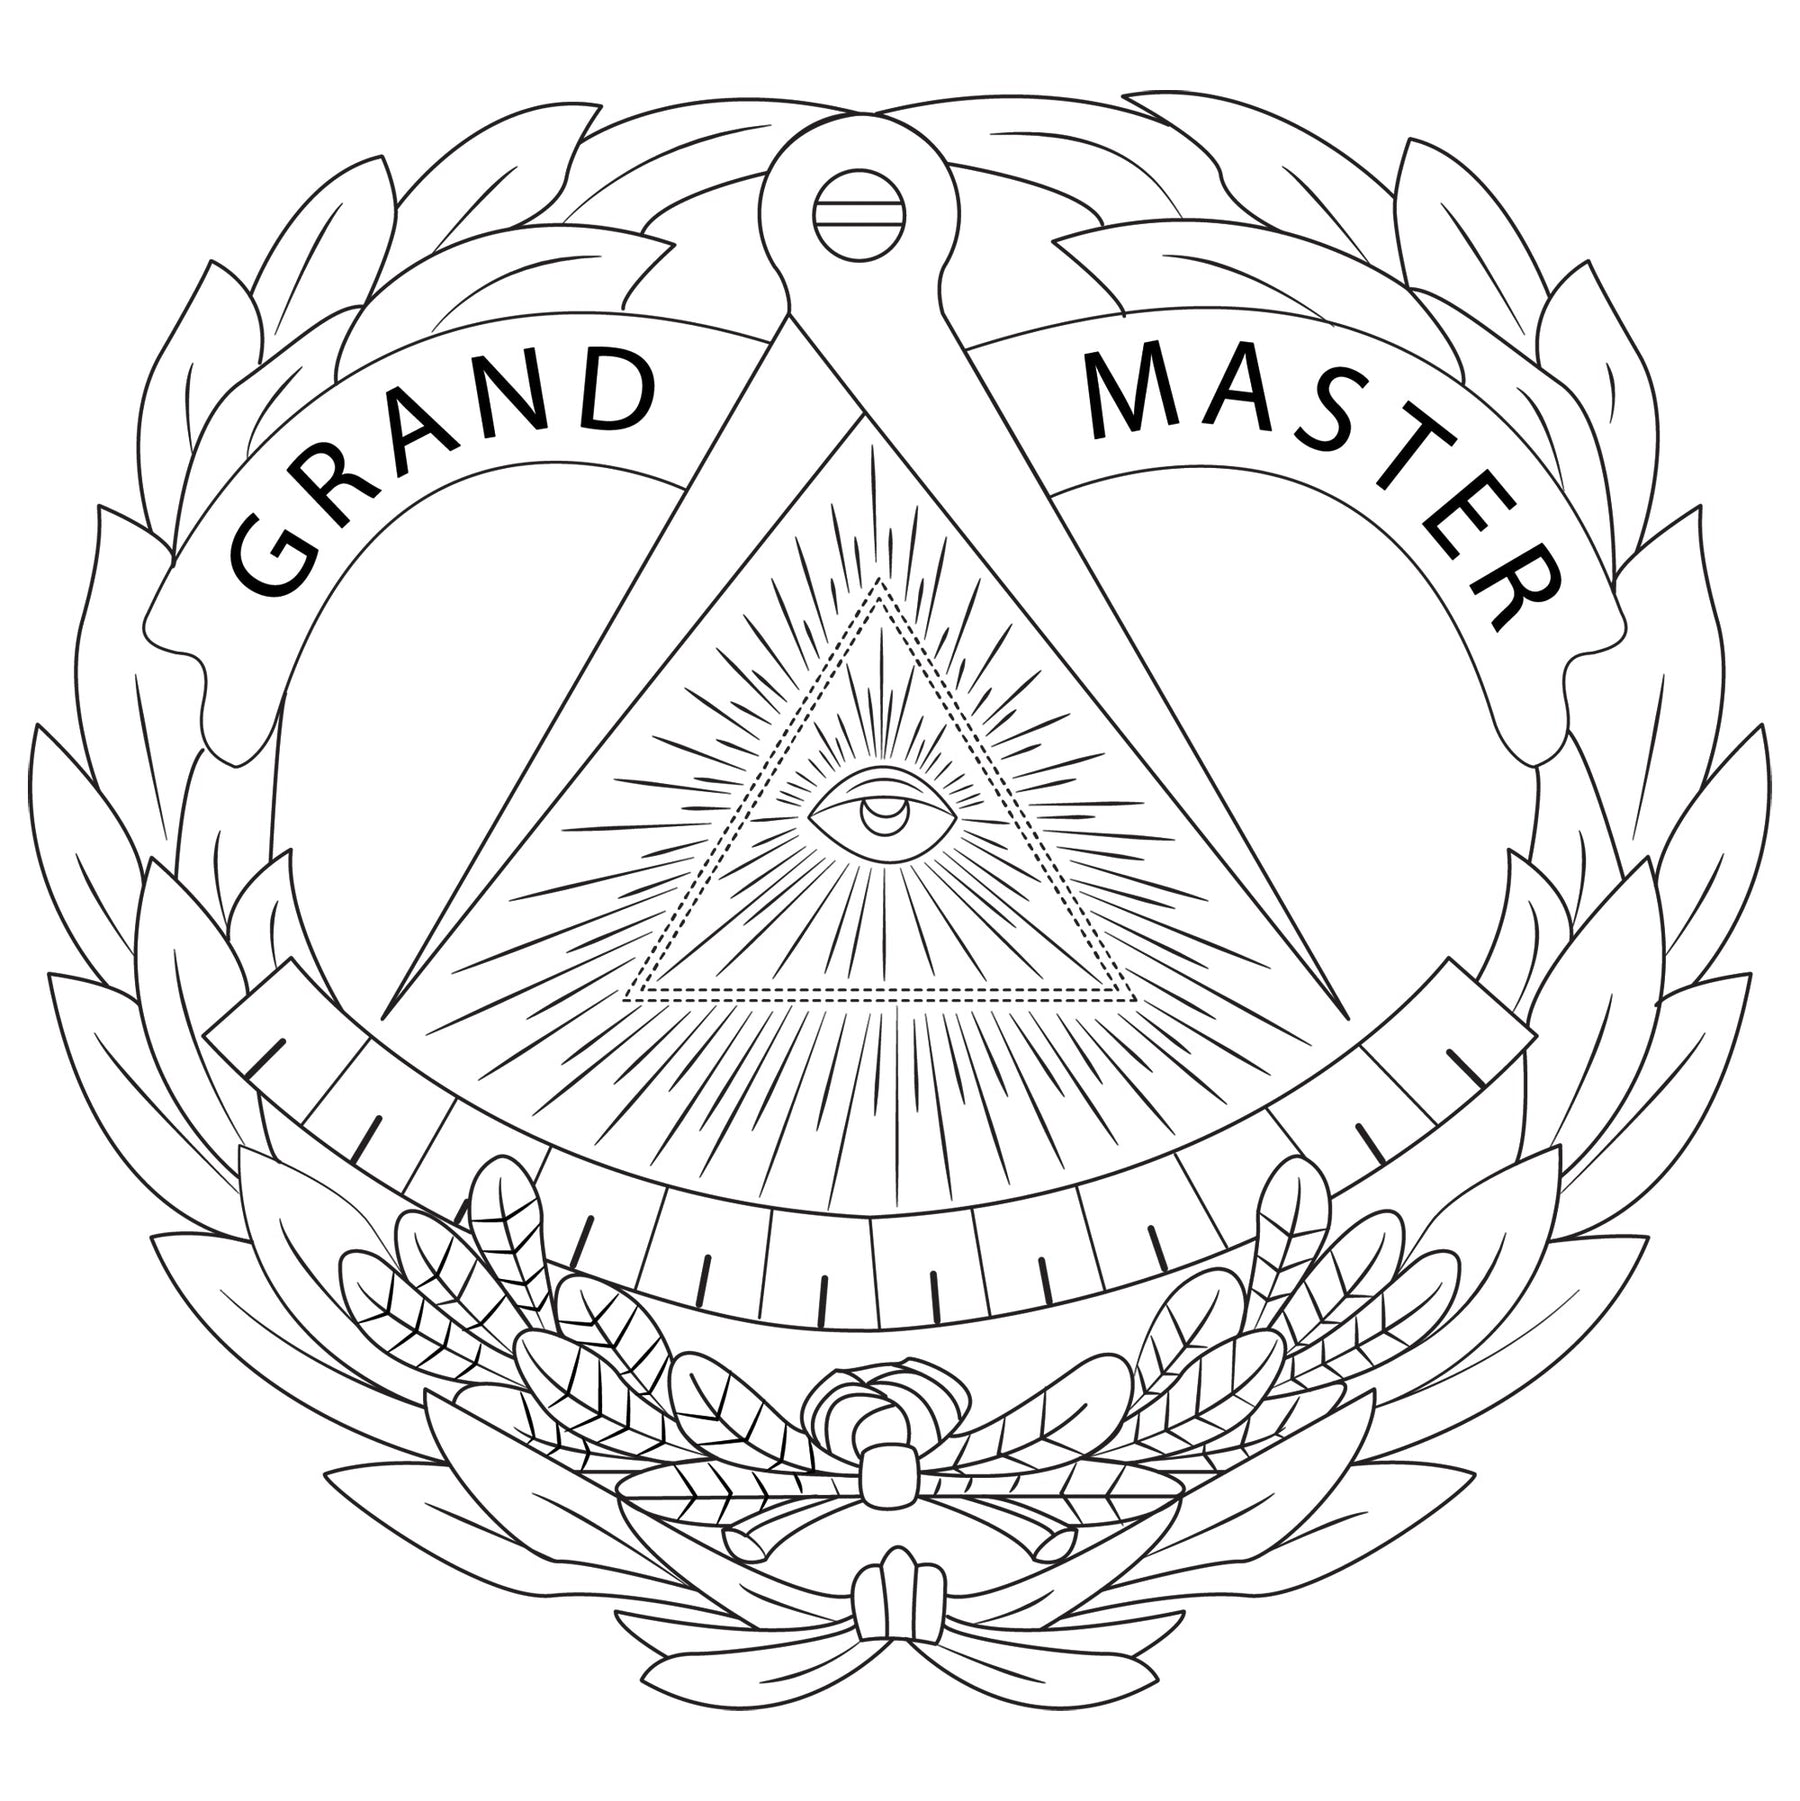 Grand Master Blue Lodge Bracelet - Silicone - Bricks Masons